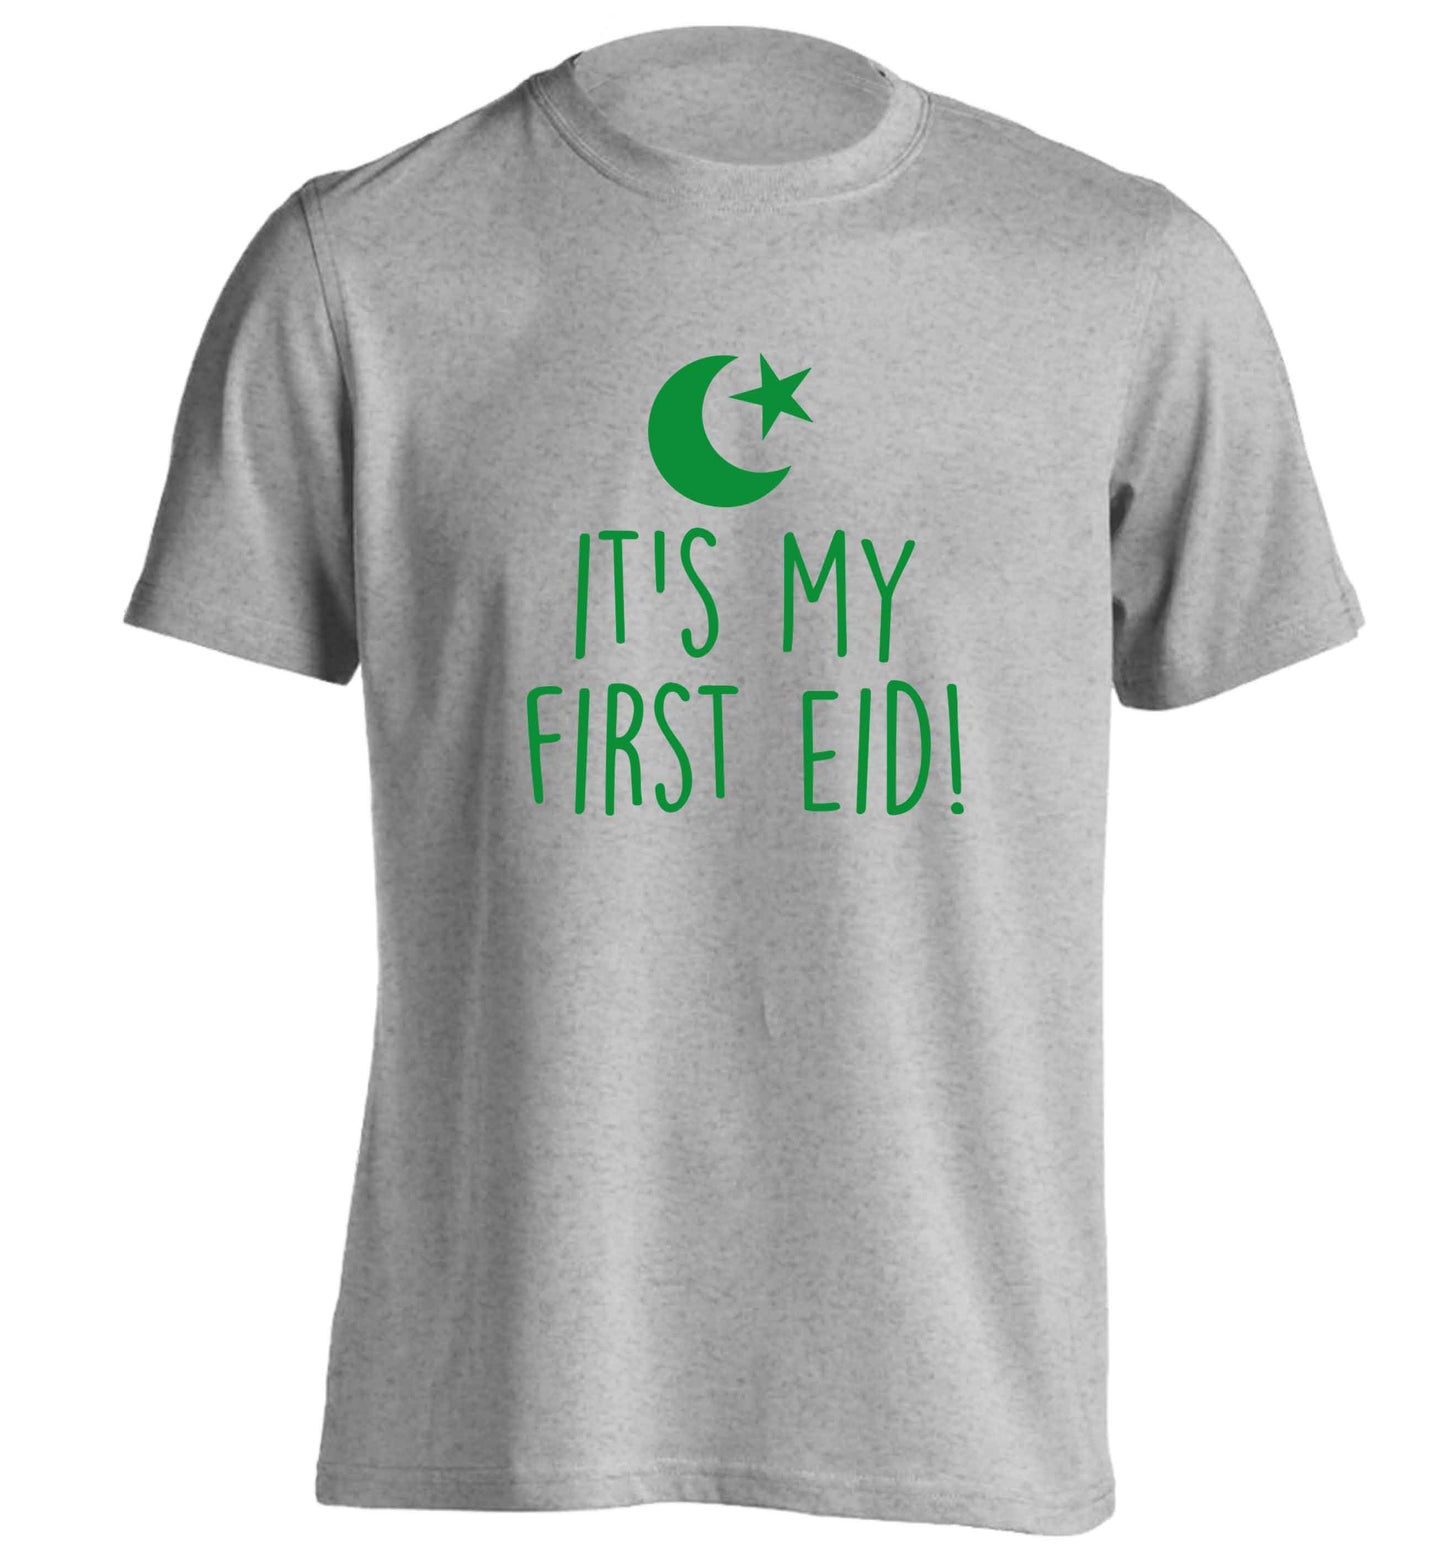 It's my first Eid adults unisex grey Tshirt 2XL